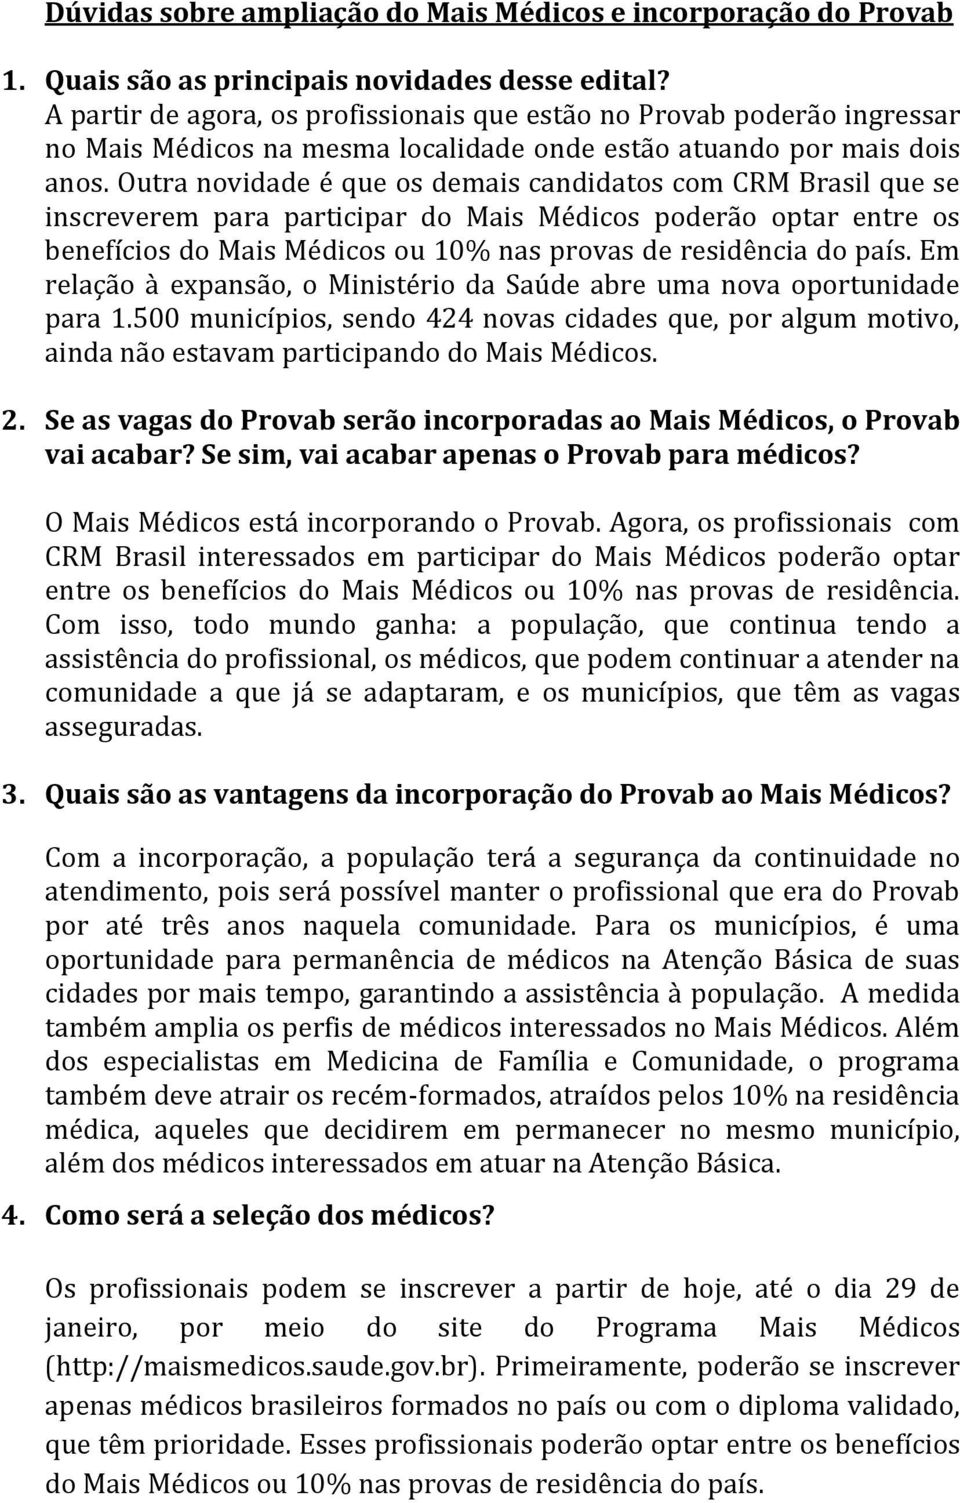 Outra novidade é que os demais candidatos com CRM Brasil que se inscreverem para participar do Mais Médicos poderão optar entre os benefícios do Mais Médicos ou 10% nas provas de residência do país.